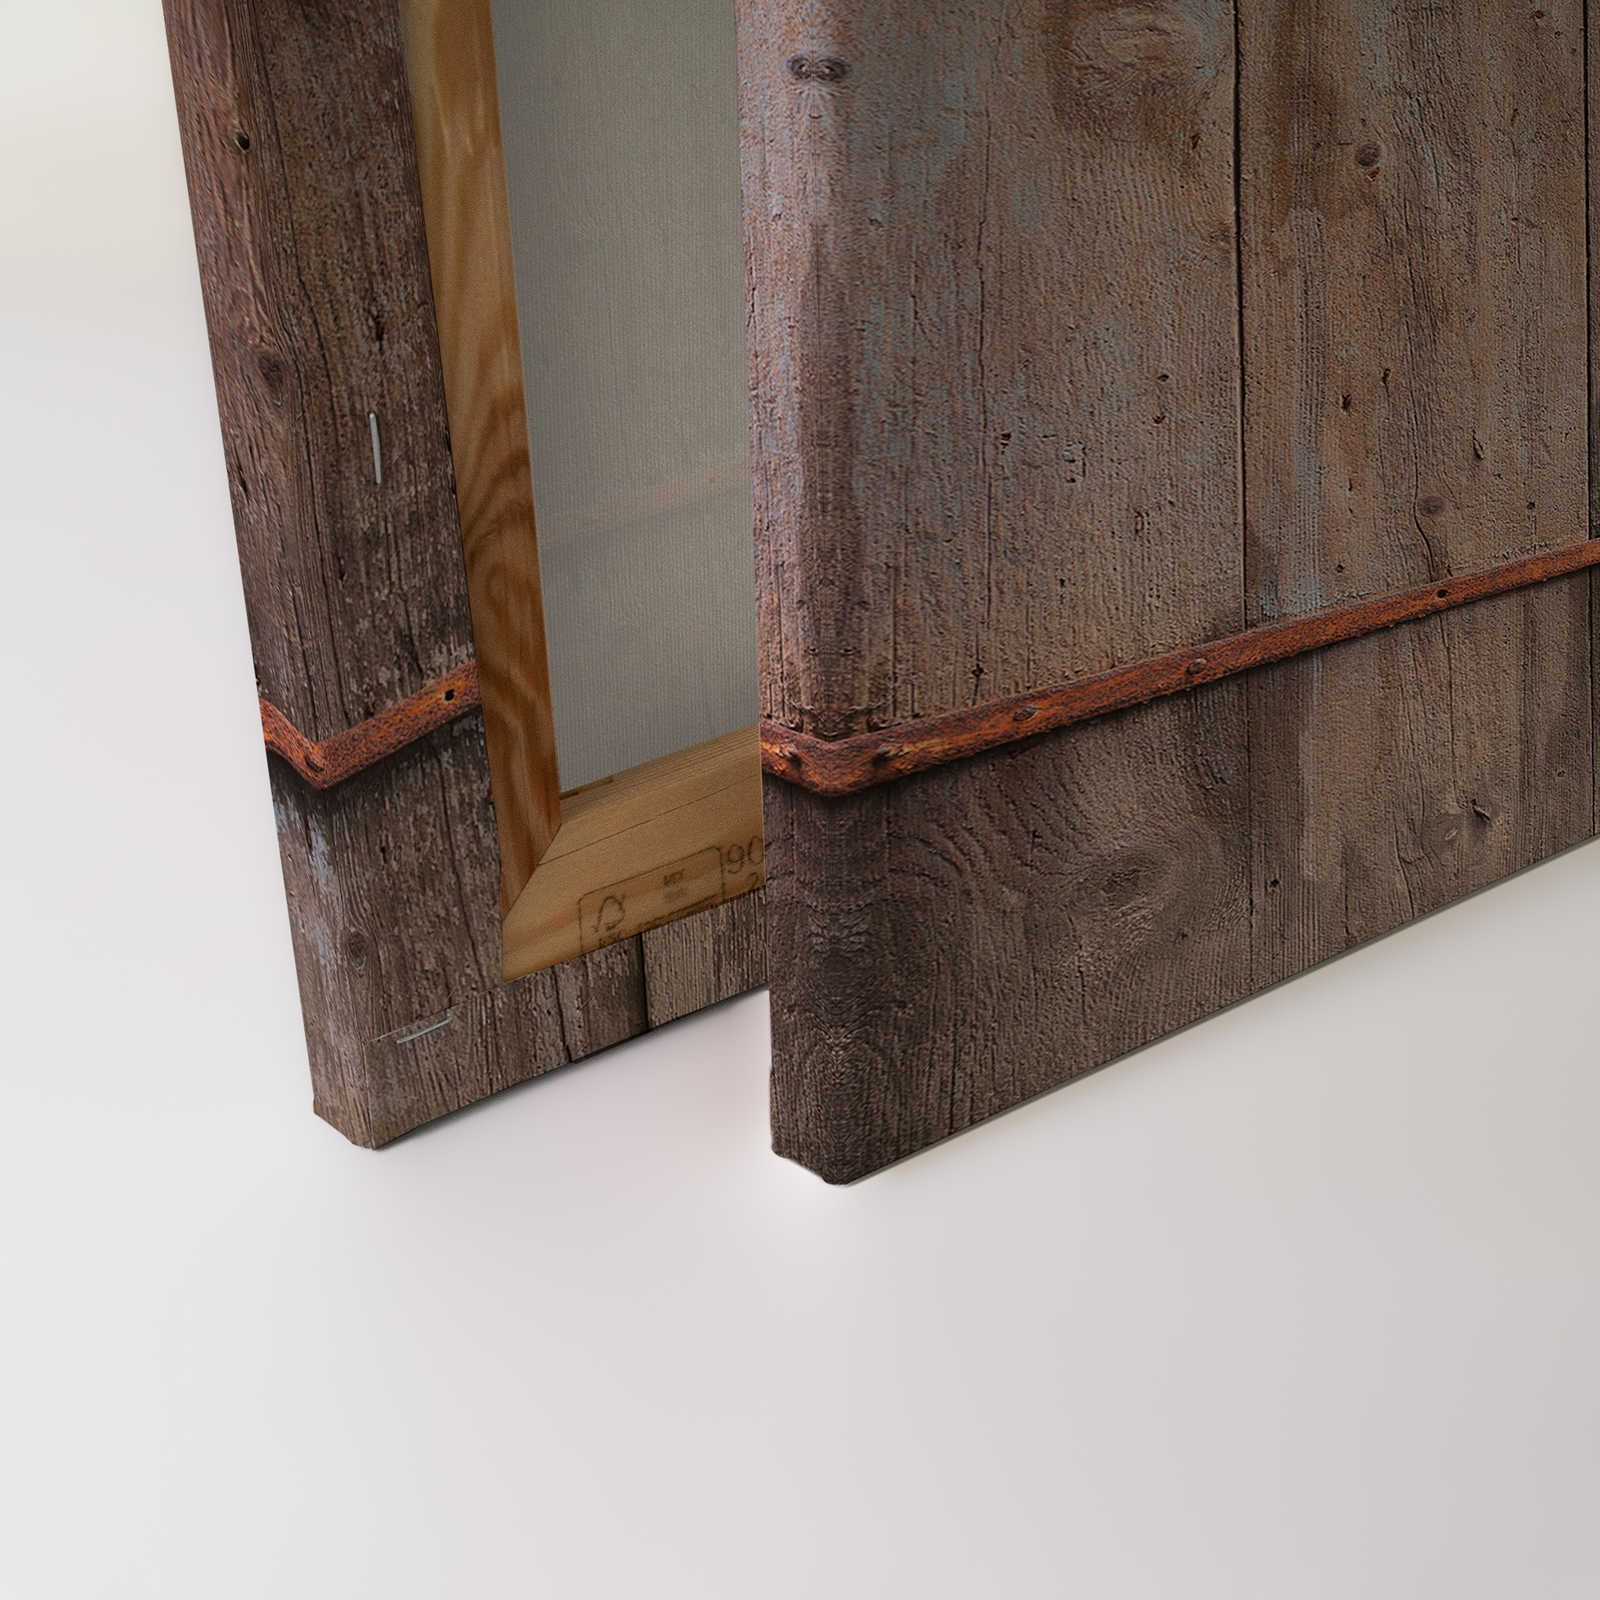             Tela di legno che dipinge la porta del fienile usata - 0,90 m x 0,60 m
        